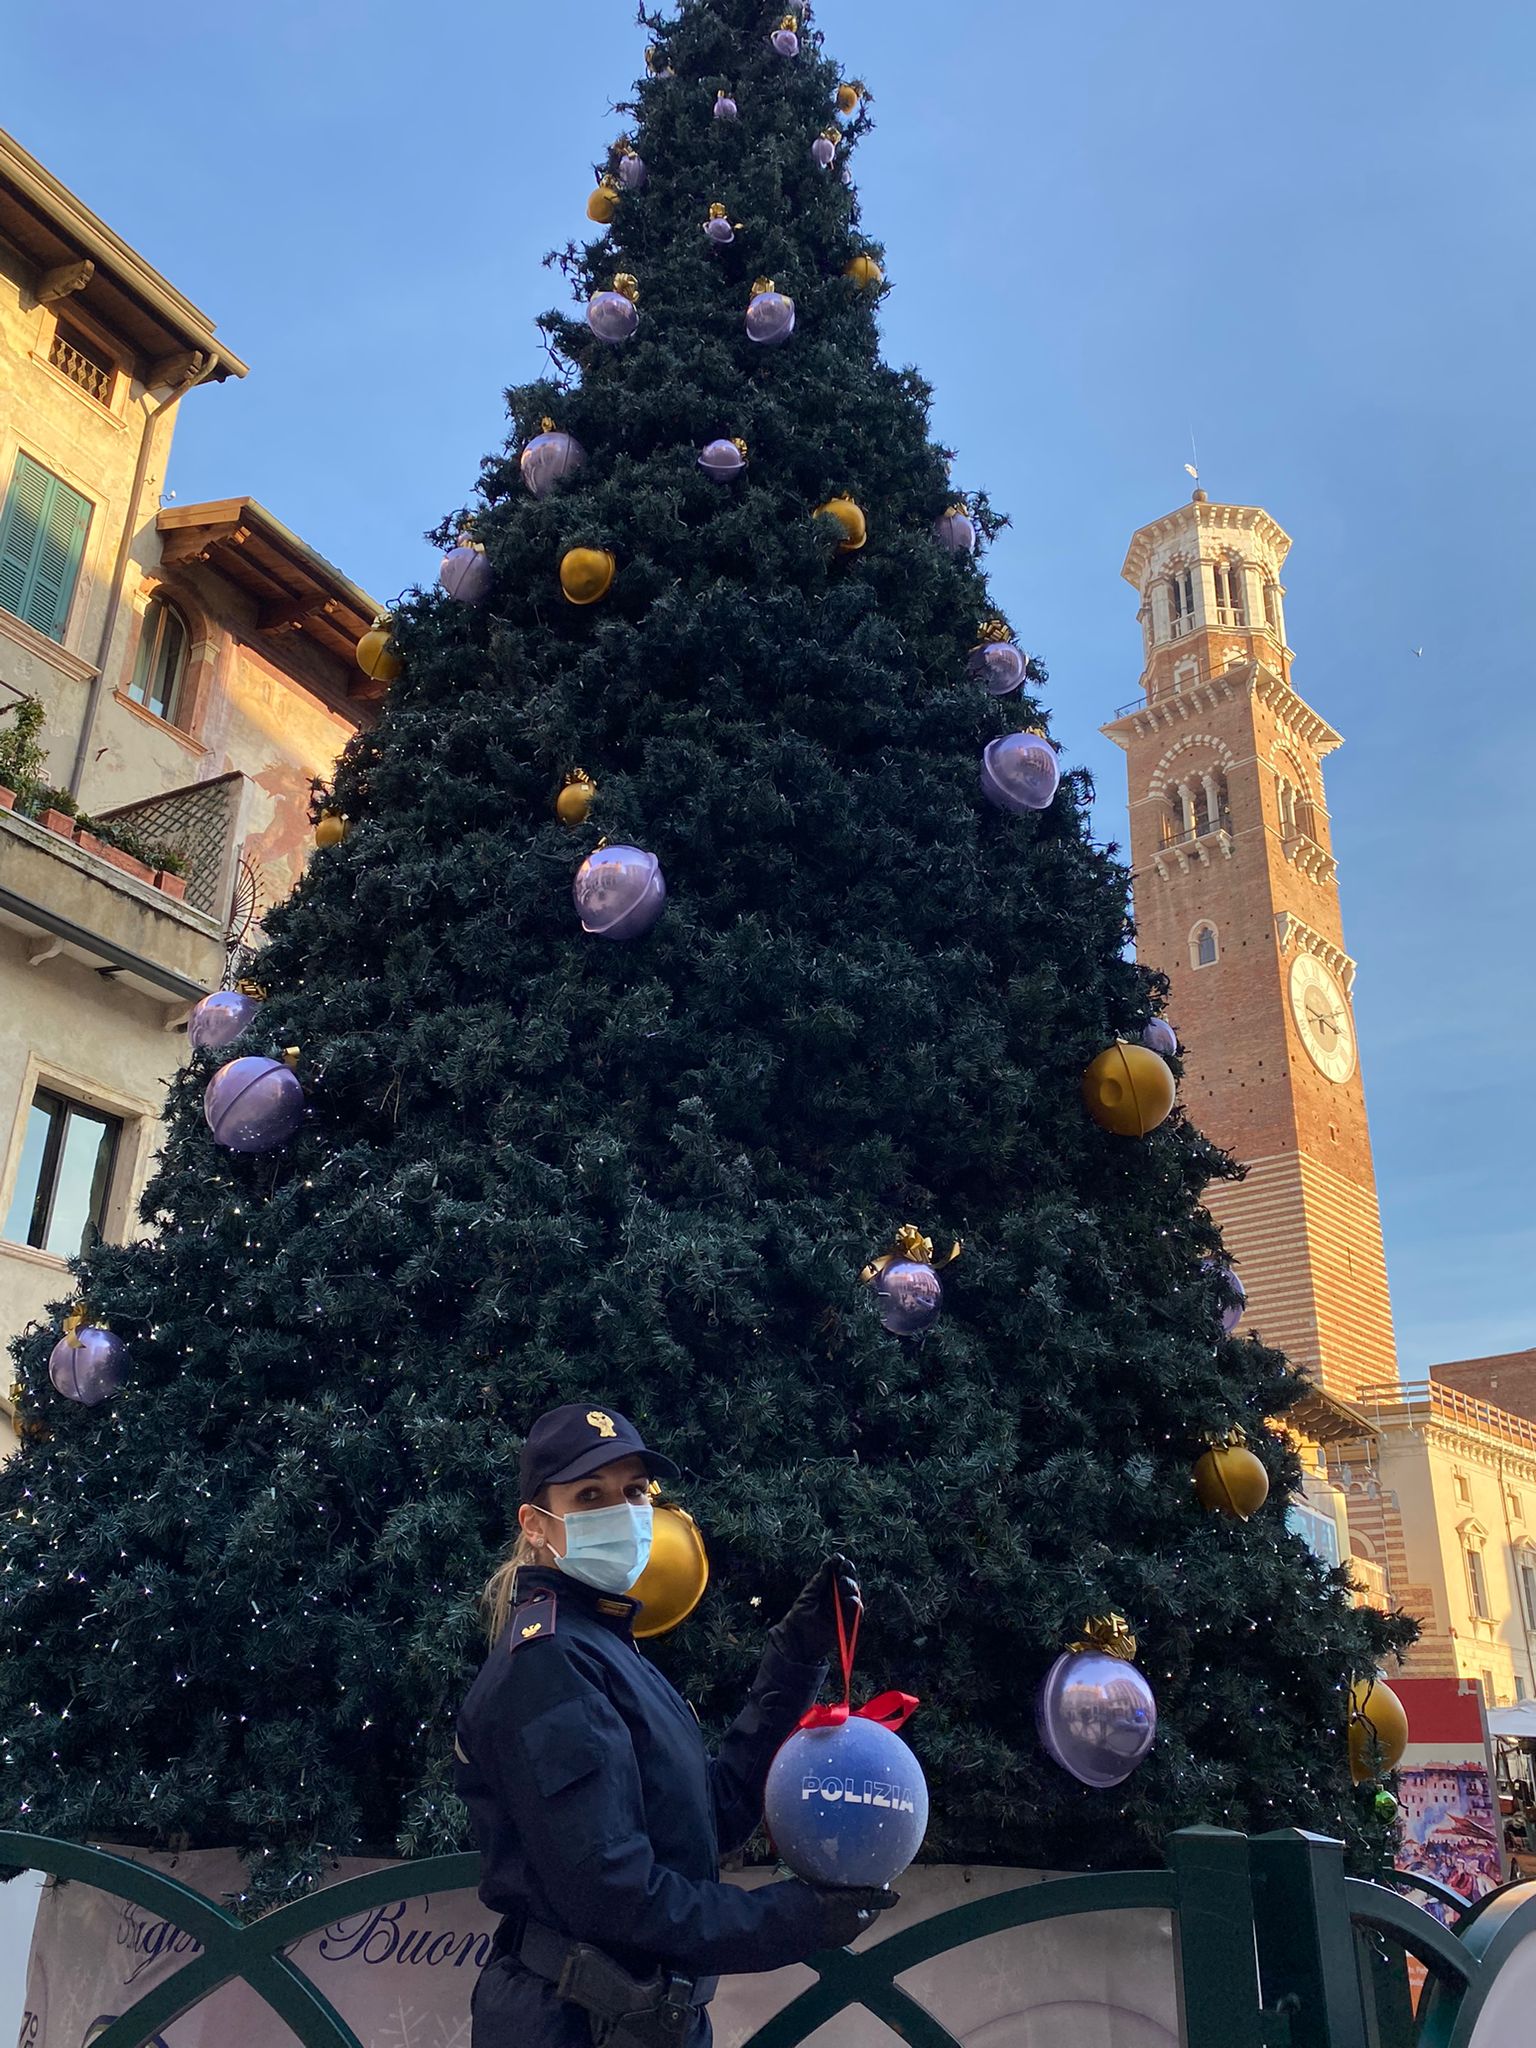 Gli alberi di Natale nelle città d’Italia con le decorazioni natalizie della Polizia di Stato: Verona